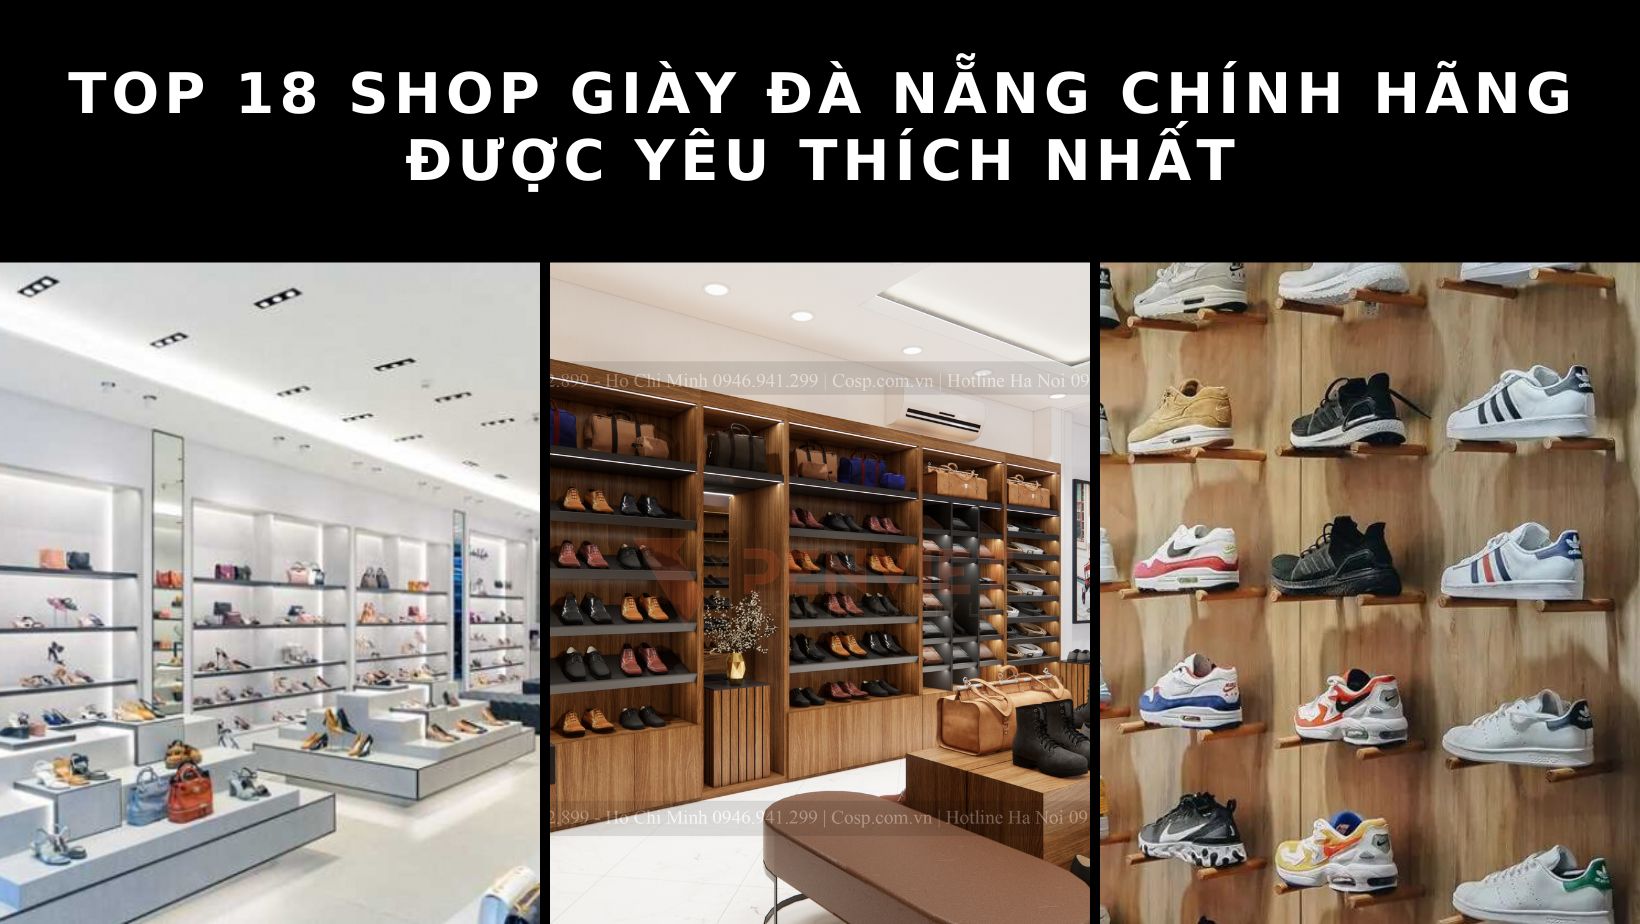 Top 18 shop giày Đà Nẵng chính hãng, chất lượng hàng đầu